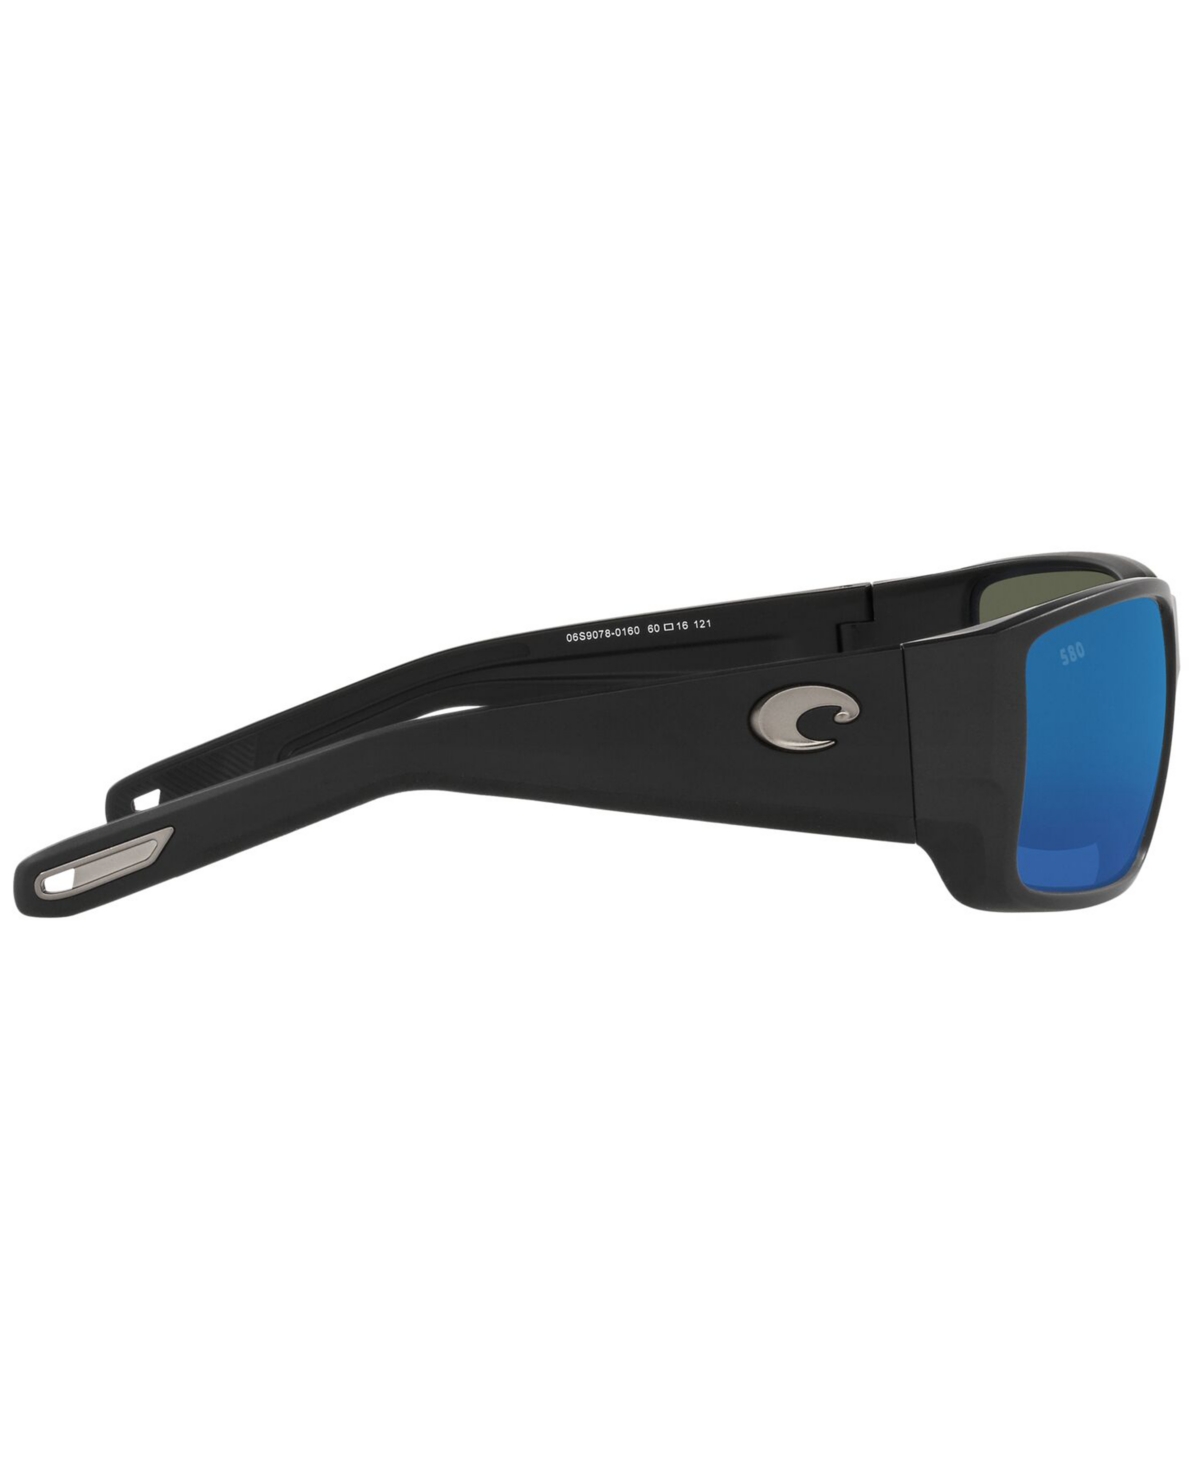 Shop Costa Del Mar Polarized Blackfin Pro Sunglasses, 6s9078 60 In Matte Black,blue Mirror G